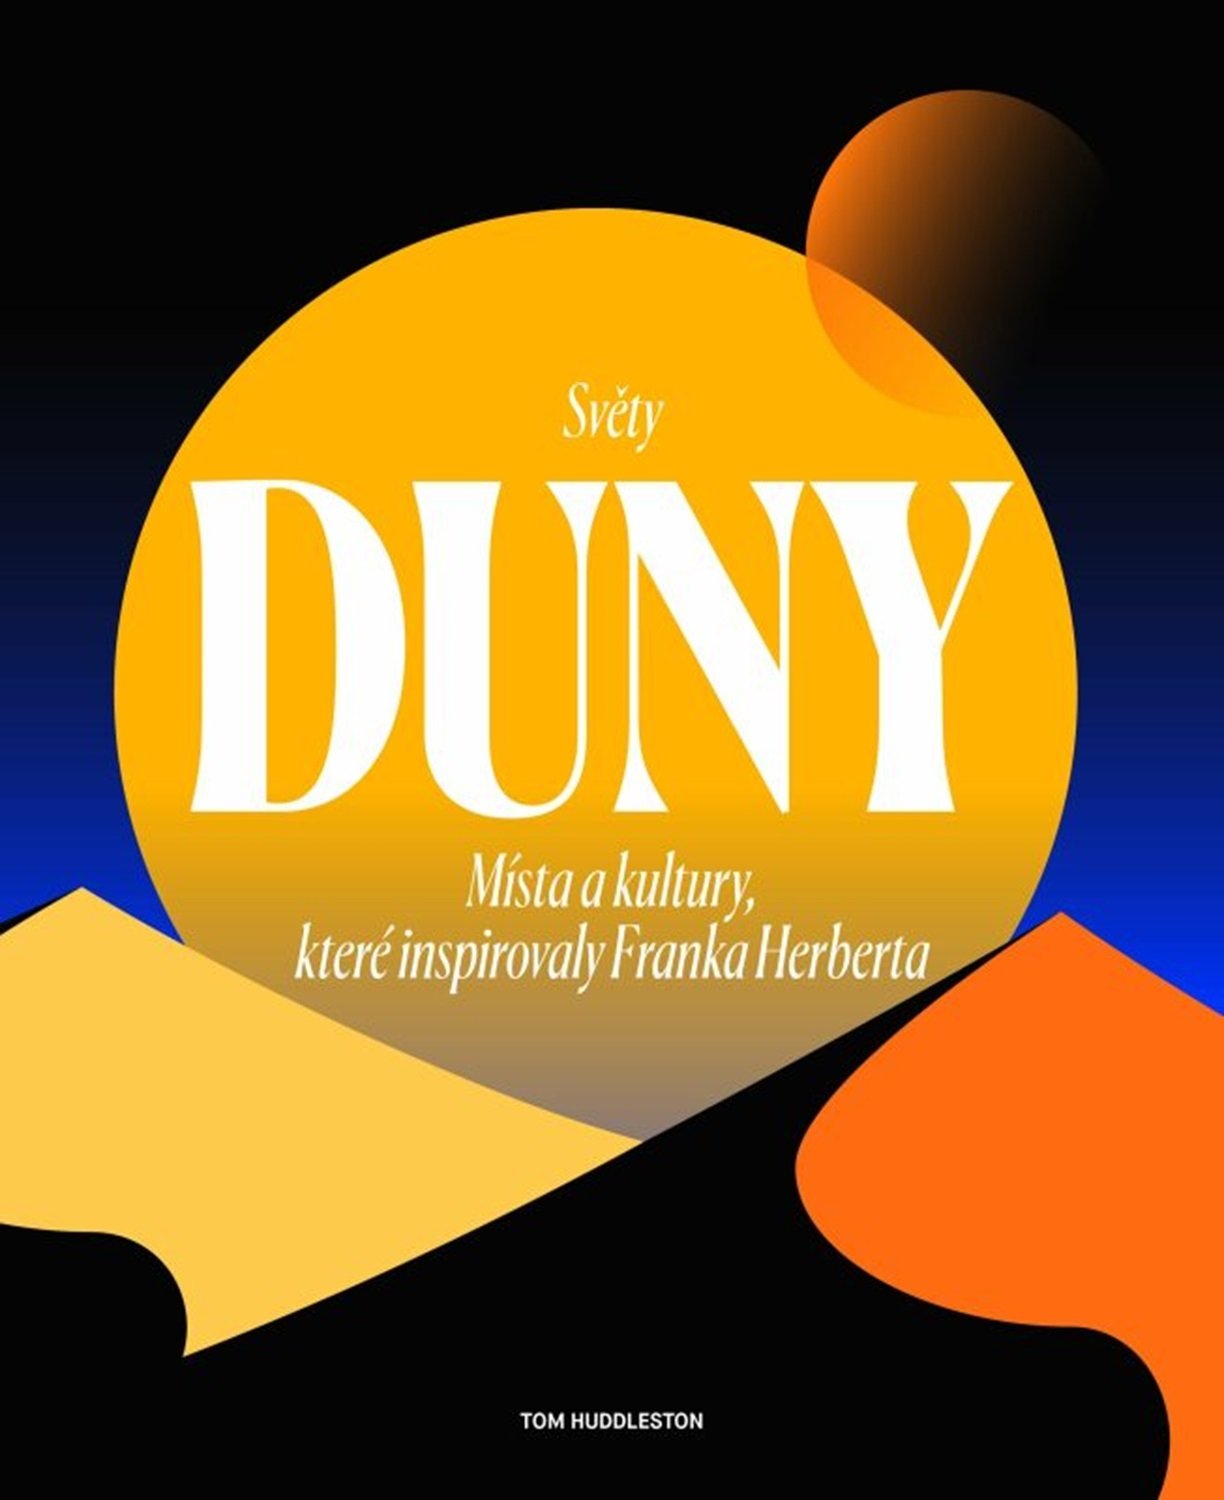 Světy Duny - Místa a kultury, které inspirovaly Franka Herberta - Tom Huddleston